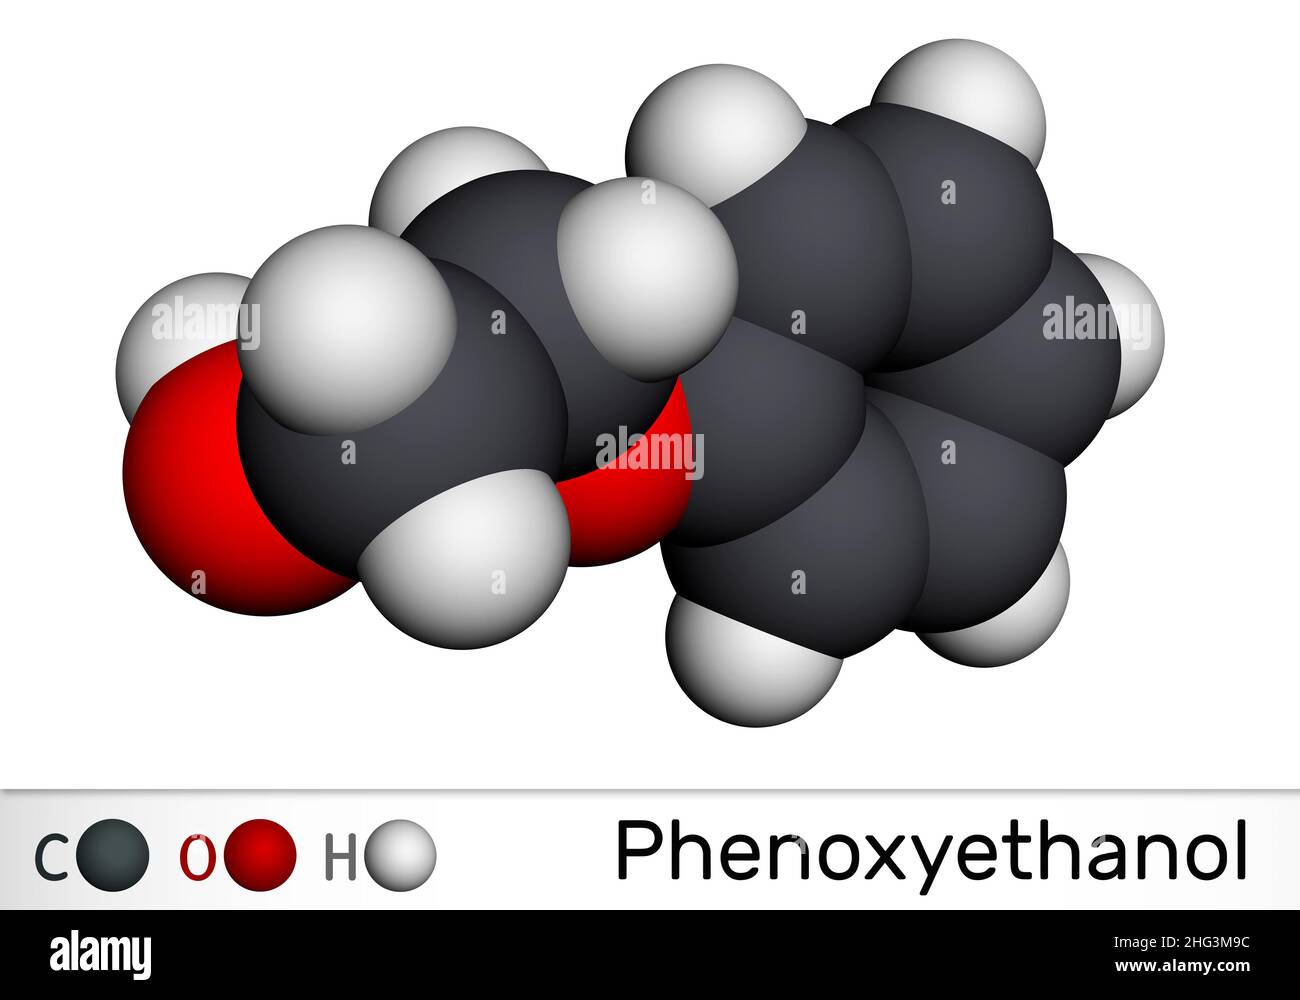 Phenoxyethanol hi-res stock photography and images - Alamy